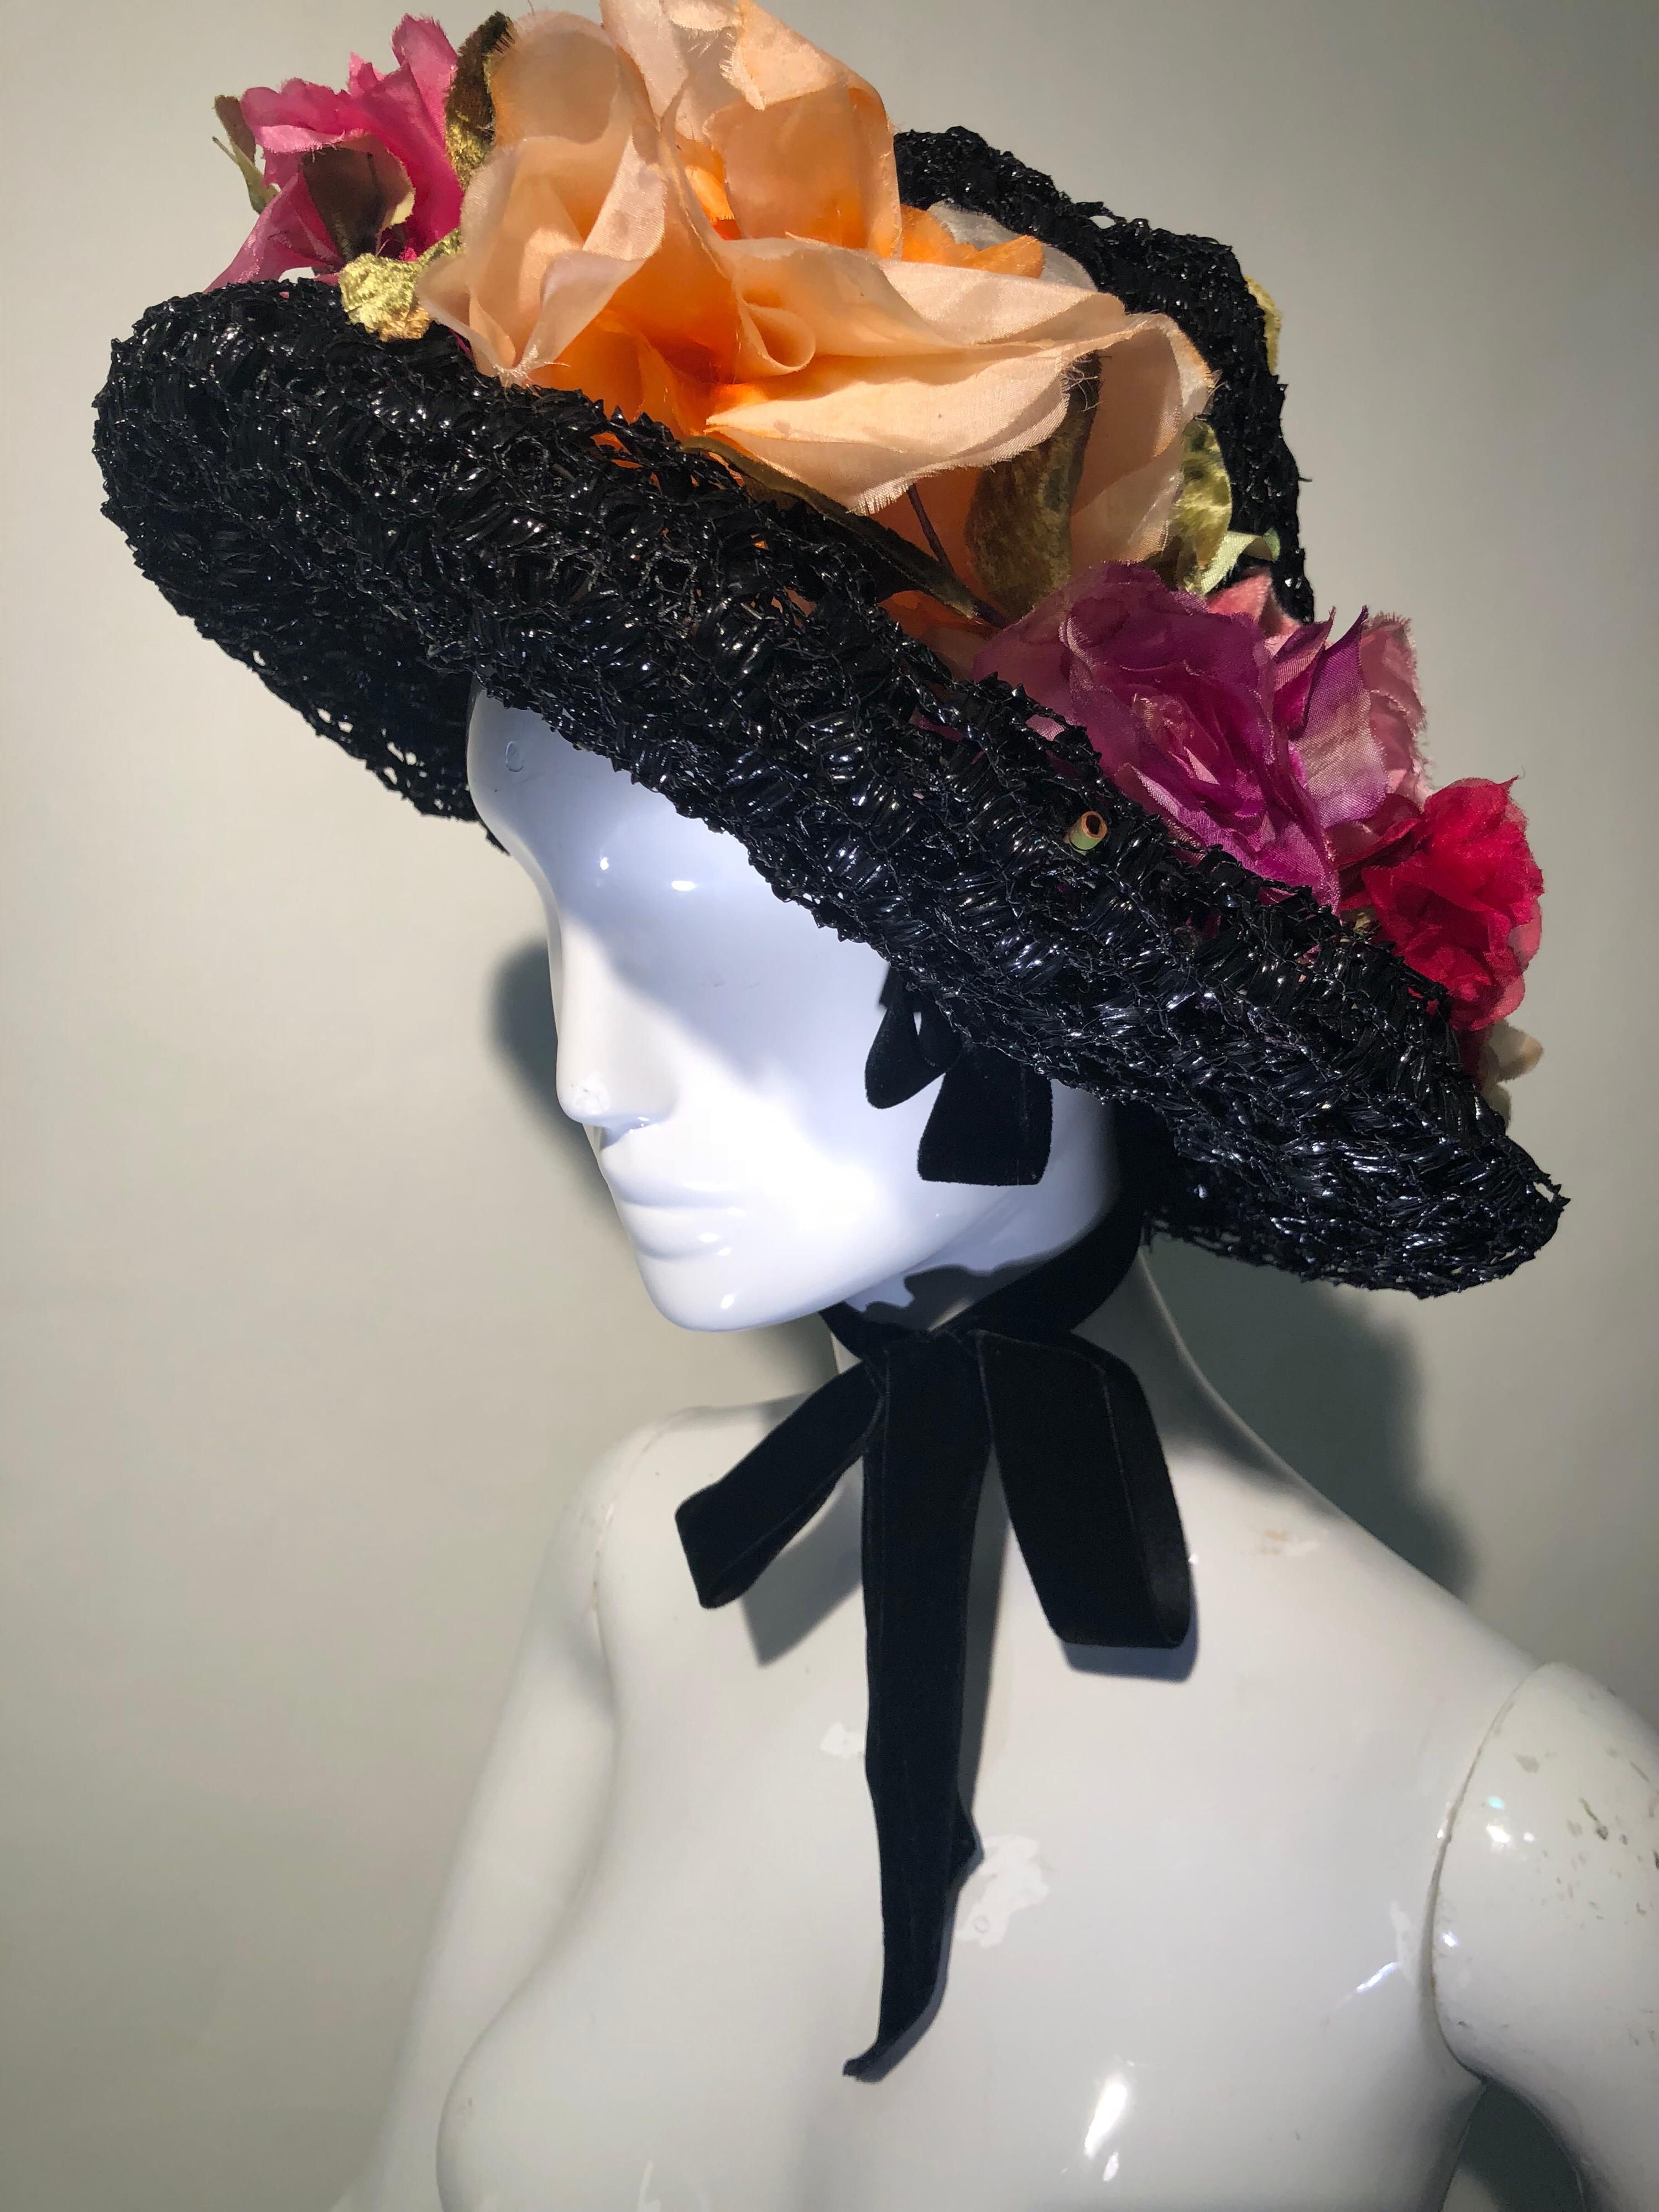 Dieser prächtige Couture-Hut von Irina Roublon aus den 1950er Jahren mit Blumenbesatz aus Seide ist eine handgefertigte Schönheit. Mehrere Lagen schwarz lackierter Schleier bilden den Korpus mit einer sanft geschwungenen Krone. So schick! Der Hut